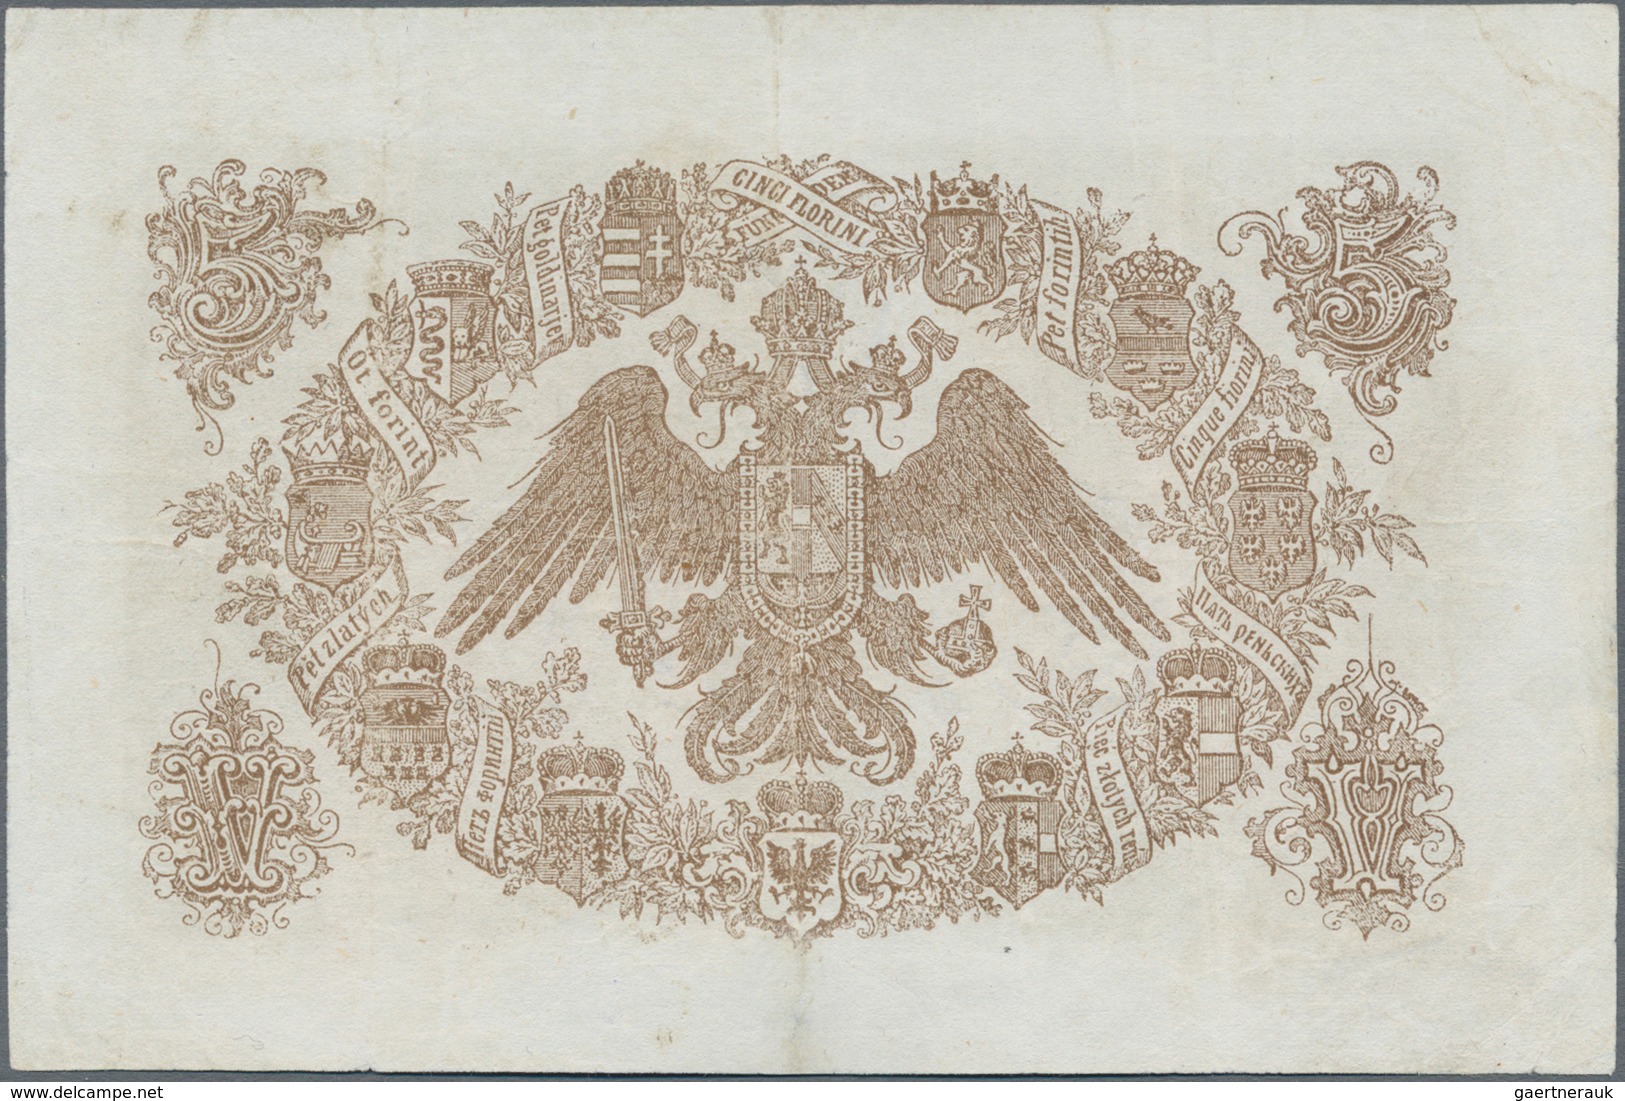 Austria / Österreich: K.u.K. Staats-Central-Casse 5 Gulden 1866 With Red Block Number, P.A151b, Stil - Oesterreich